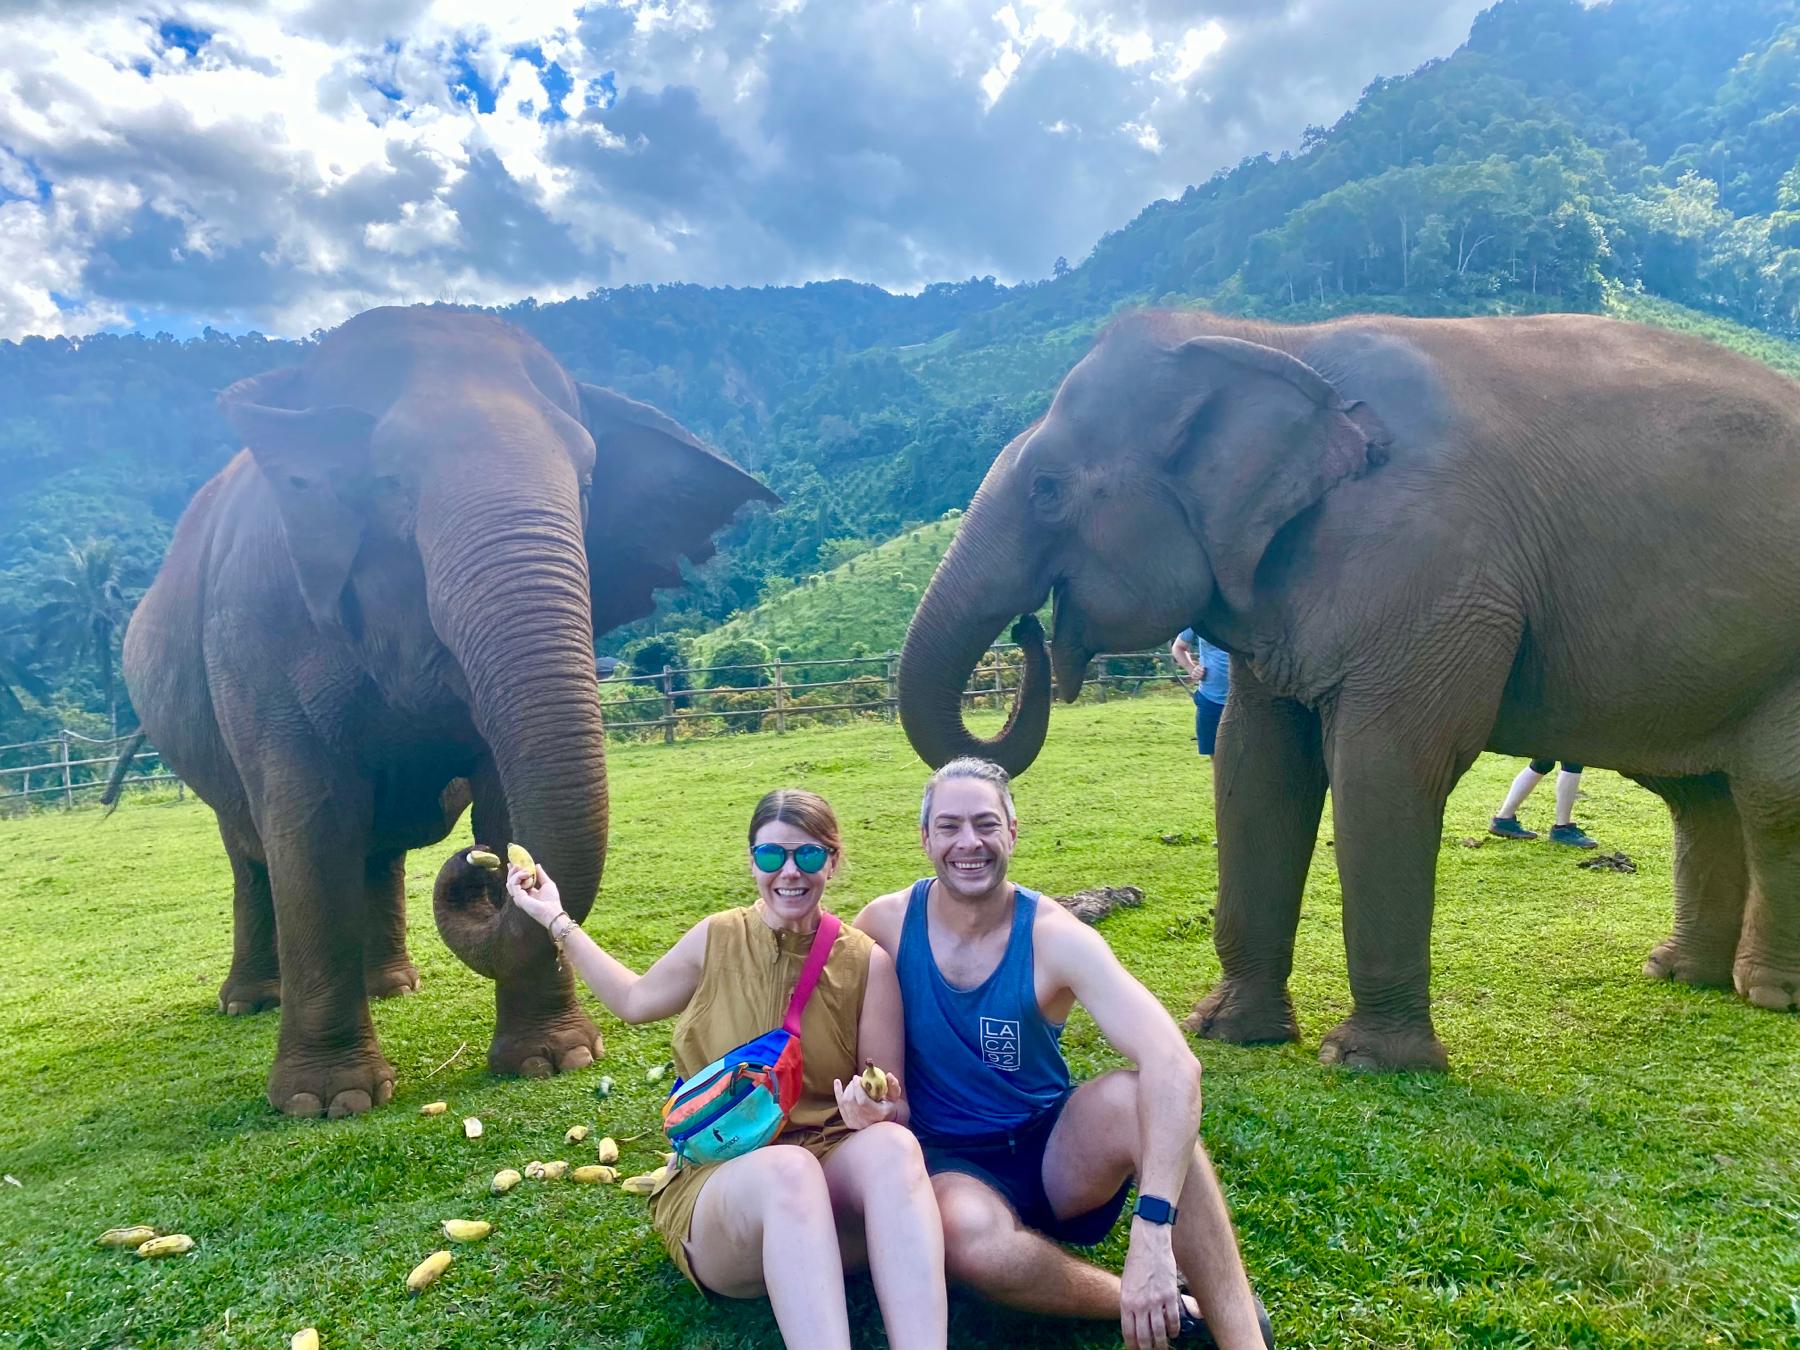 Elephant Nature Park, Thailand - Nov. 2022